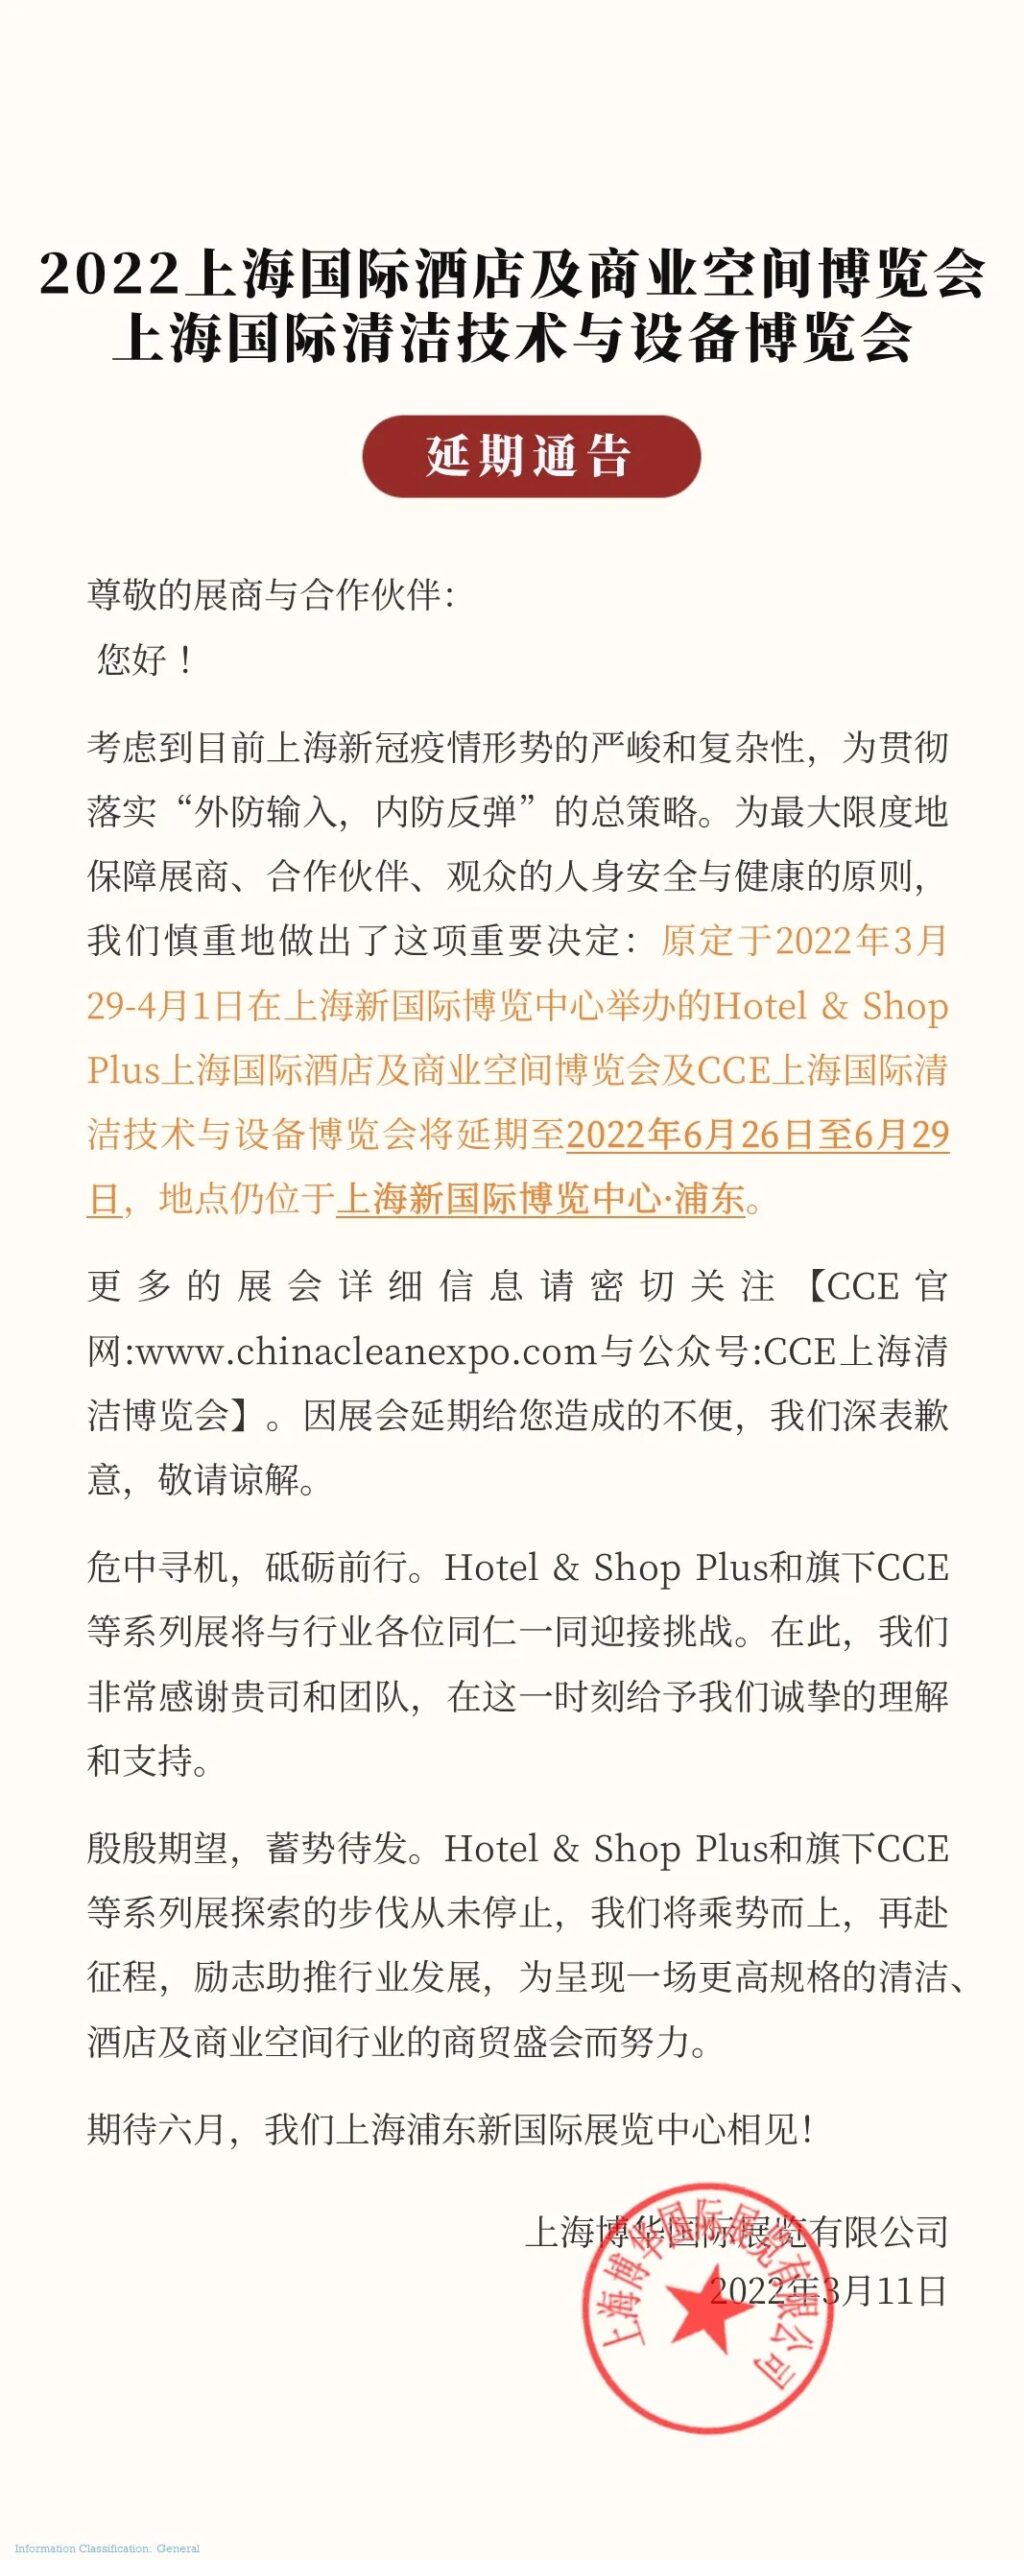 CCE上海清洁展及ISSA展区延期公告